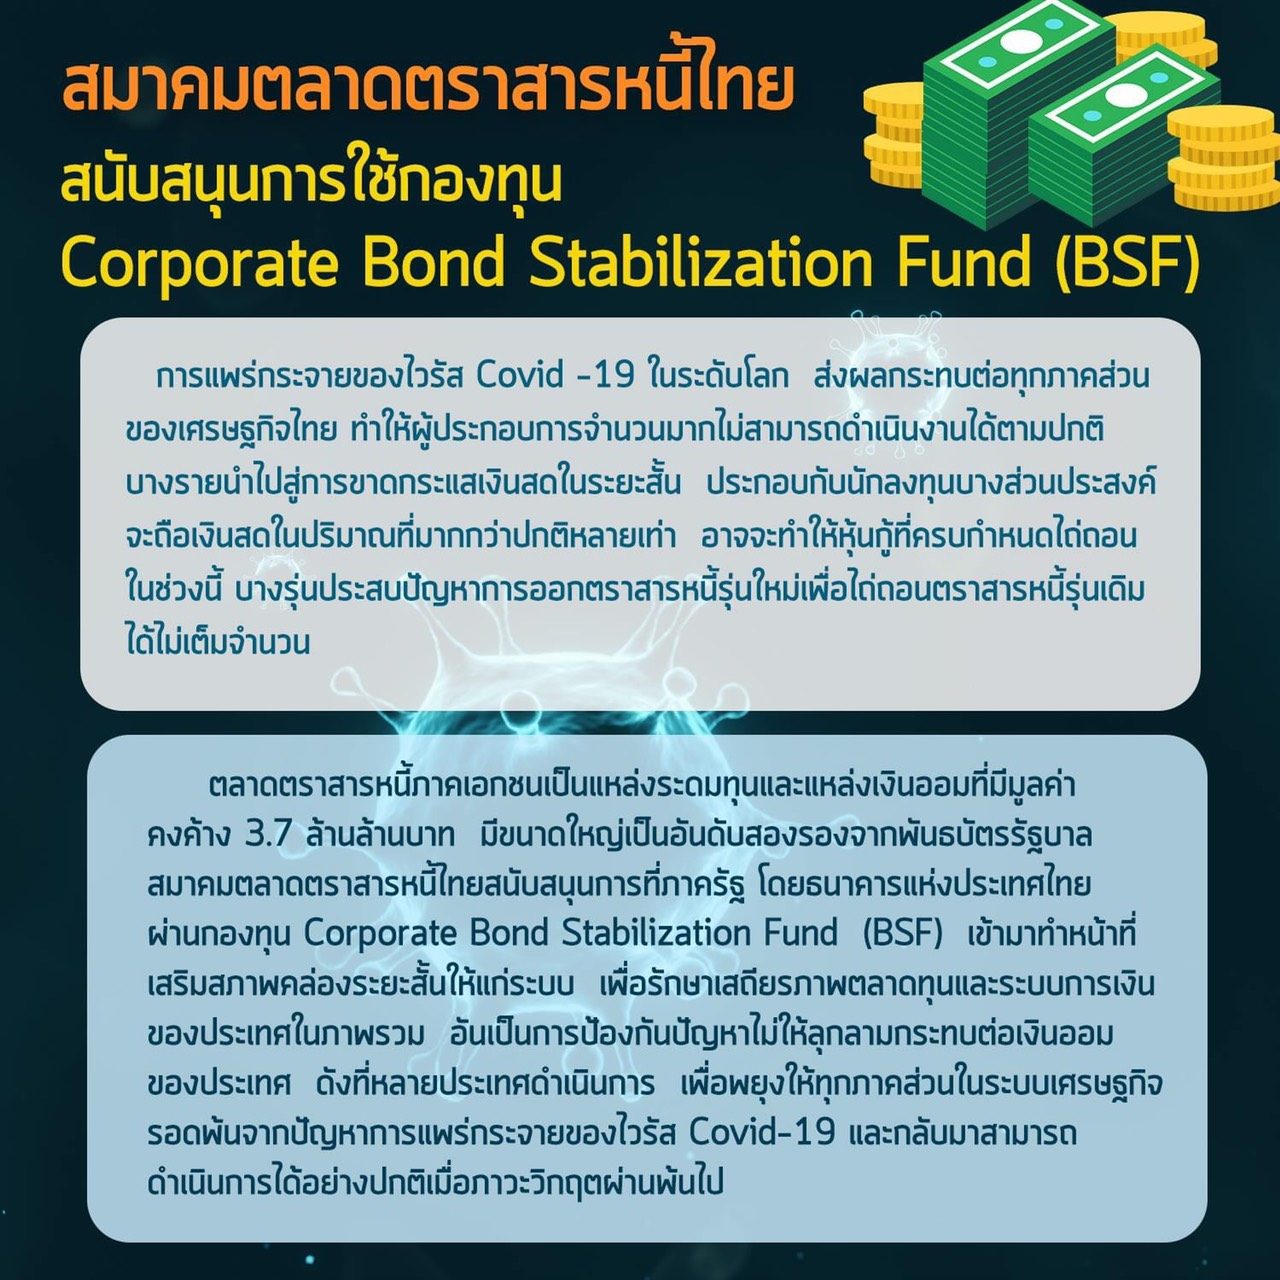 ‘สมาคมตลาดตราสารหนี้ไทย’ หนุน ‘ธปท.’ ออกกองทุนเสริมสภาพคล่องตลาดตราสารหนี้ภาคเอกชน